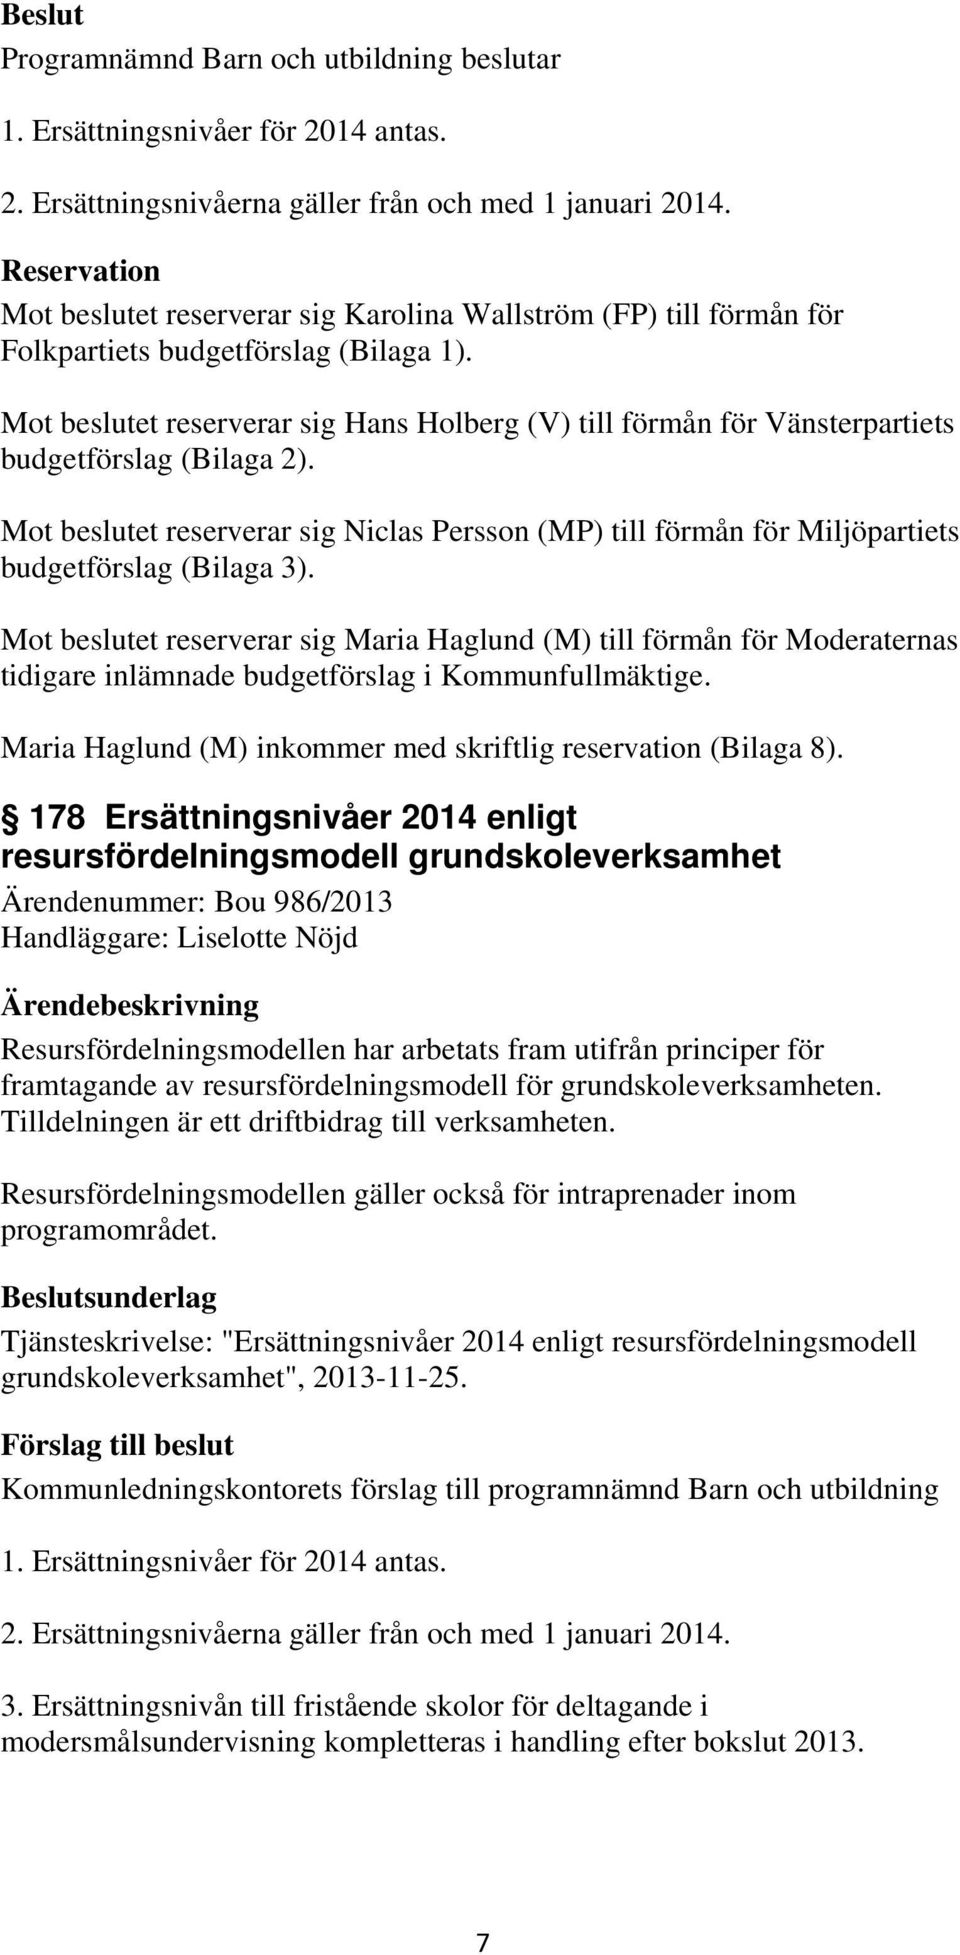 Mot beslutet reserverar sig Hans Holberg (V) till förmån för Vänsterpartiets budgetförslag (Bilaga 2).